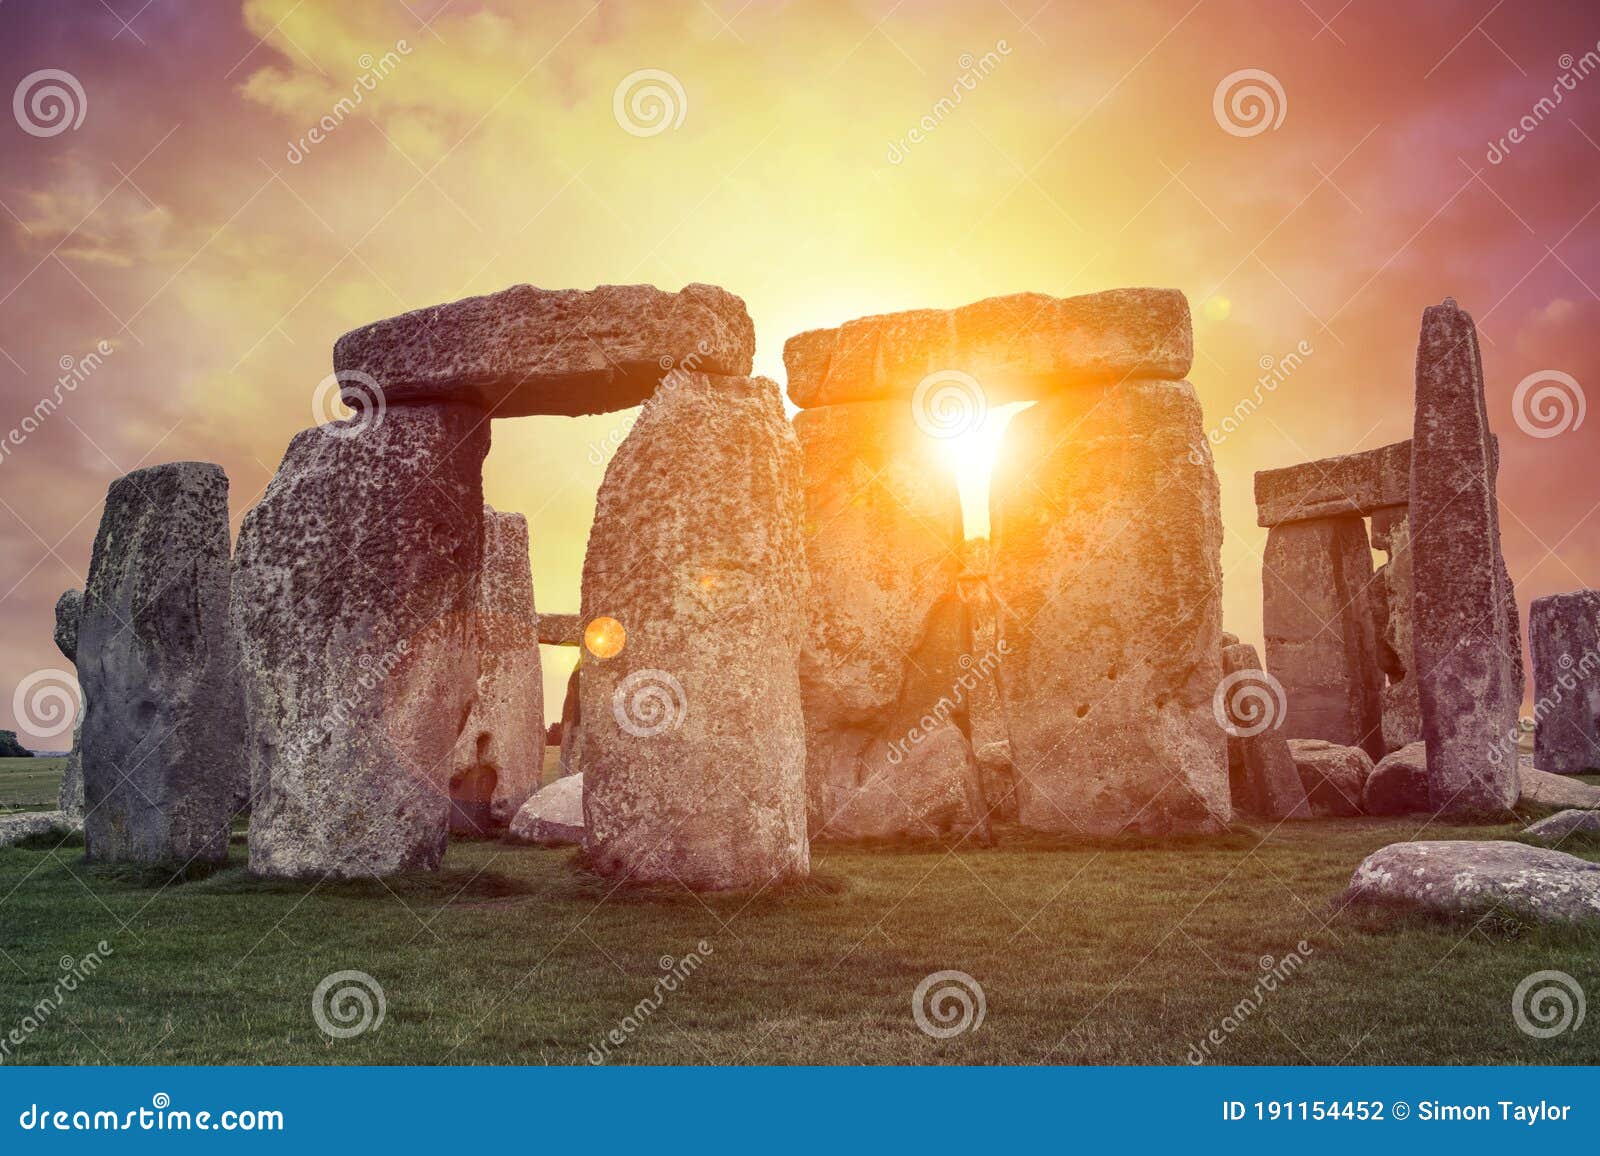 spectacular sunrise over stonehenge, england